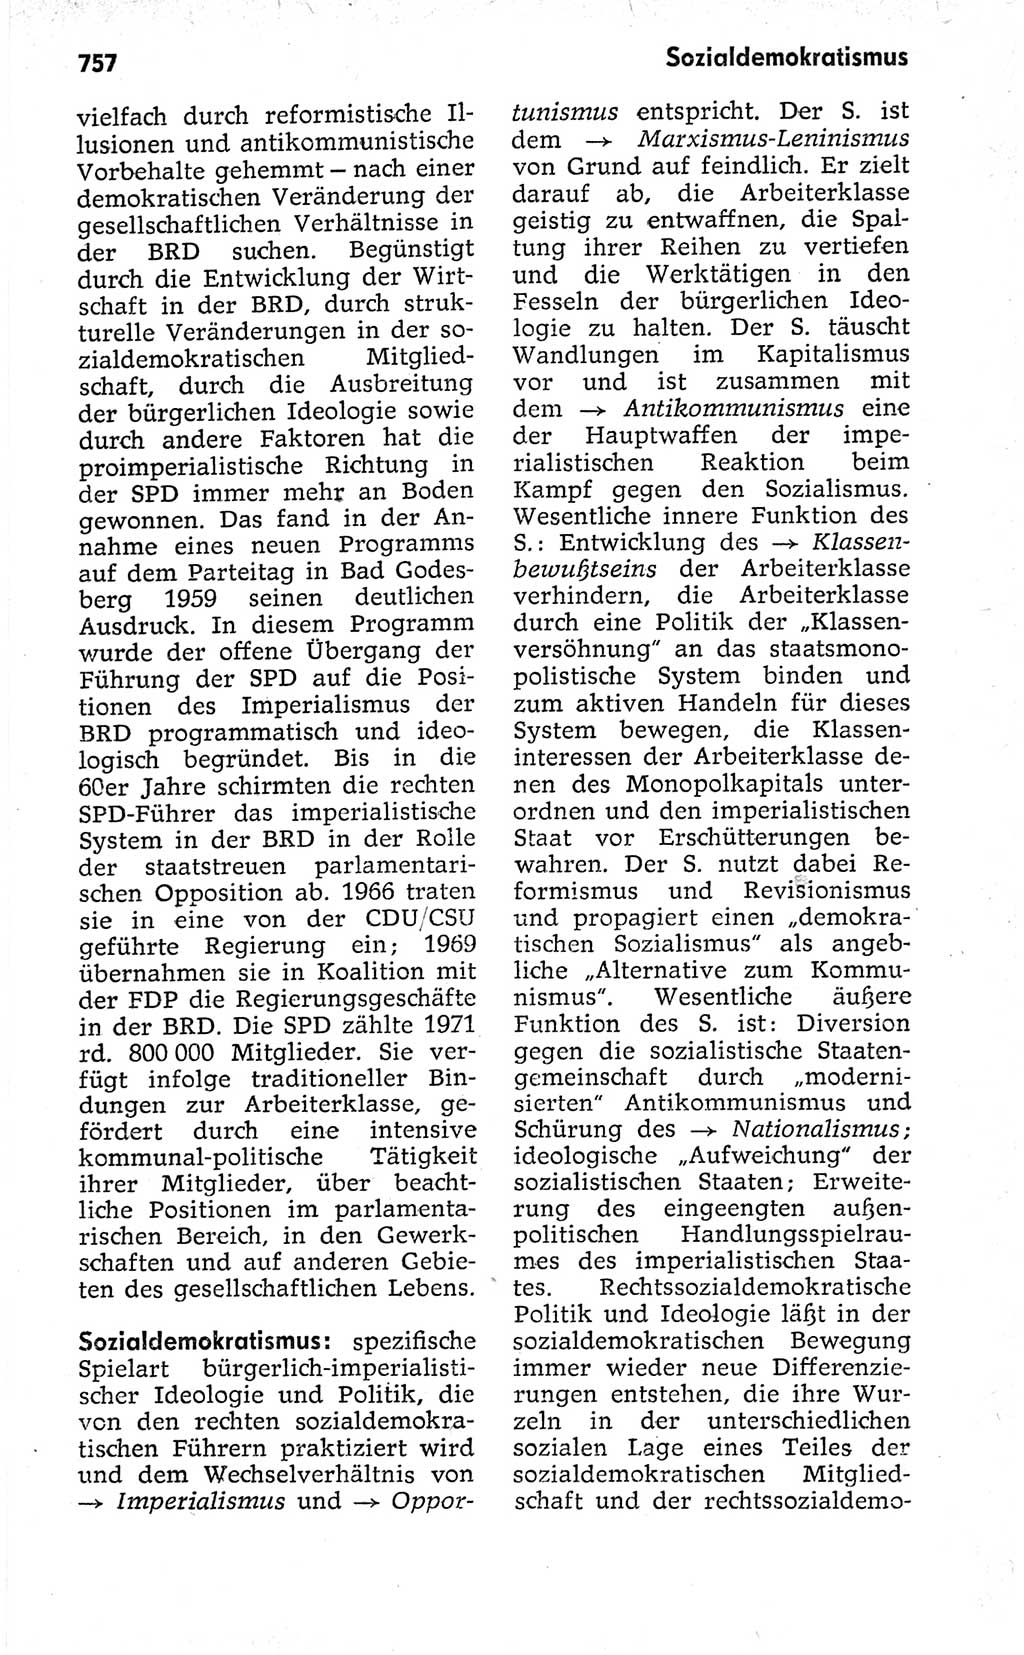 Kleines politisches Wörterbuch [Deutsche Demokratische Republik (DDR)] 1973, Seite 757 (Kl. pol. Wb. DDR 1973, S. 757)